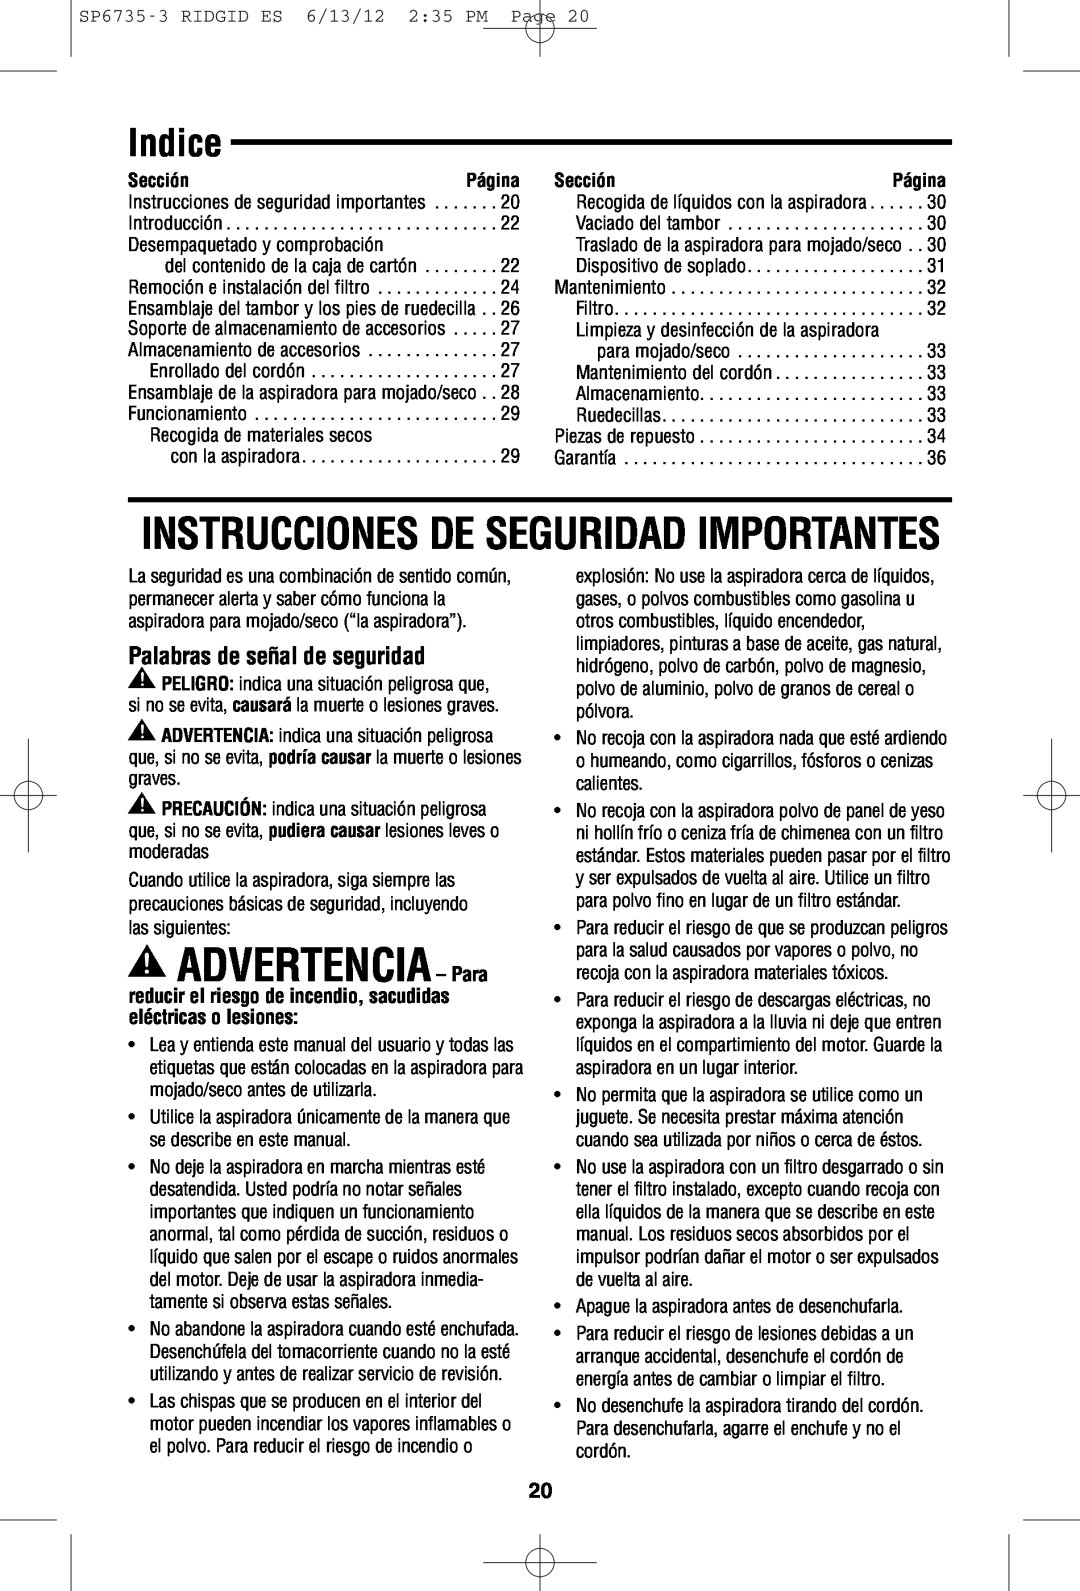 RIDGID WD14500 owner manual Indice, Palabras!de señal de seguridad, Instrucciones De Seguridad Importantes, Sección 